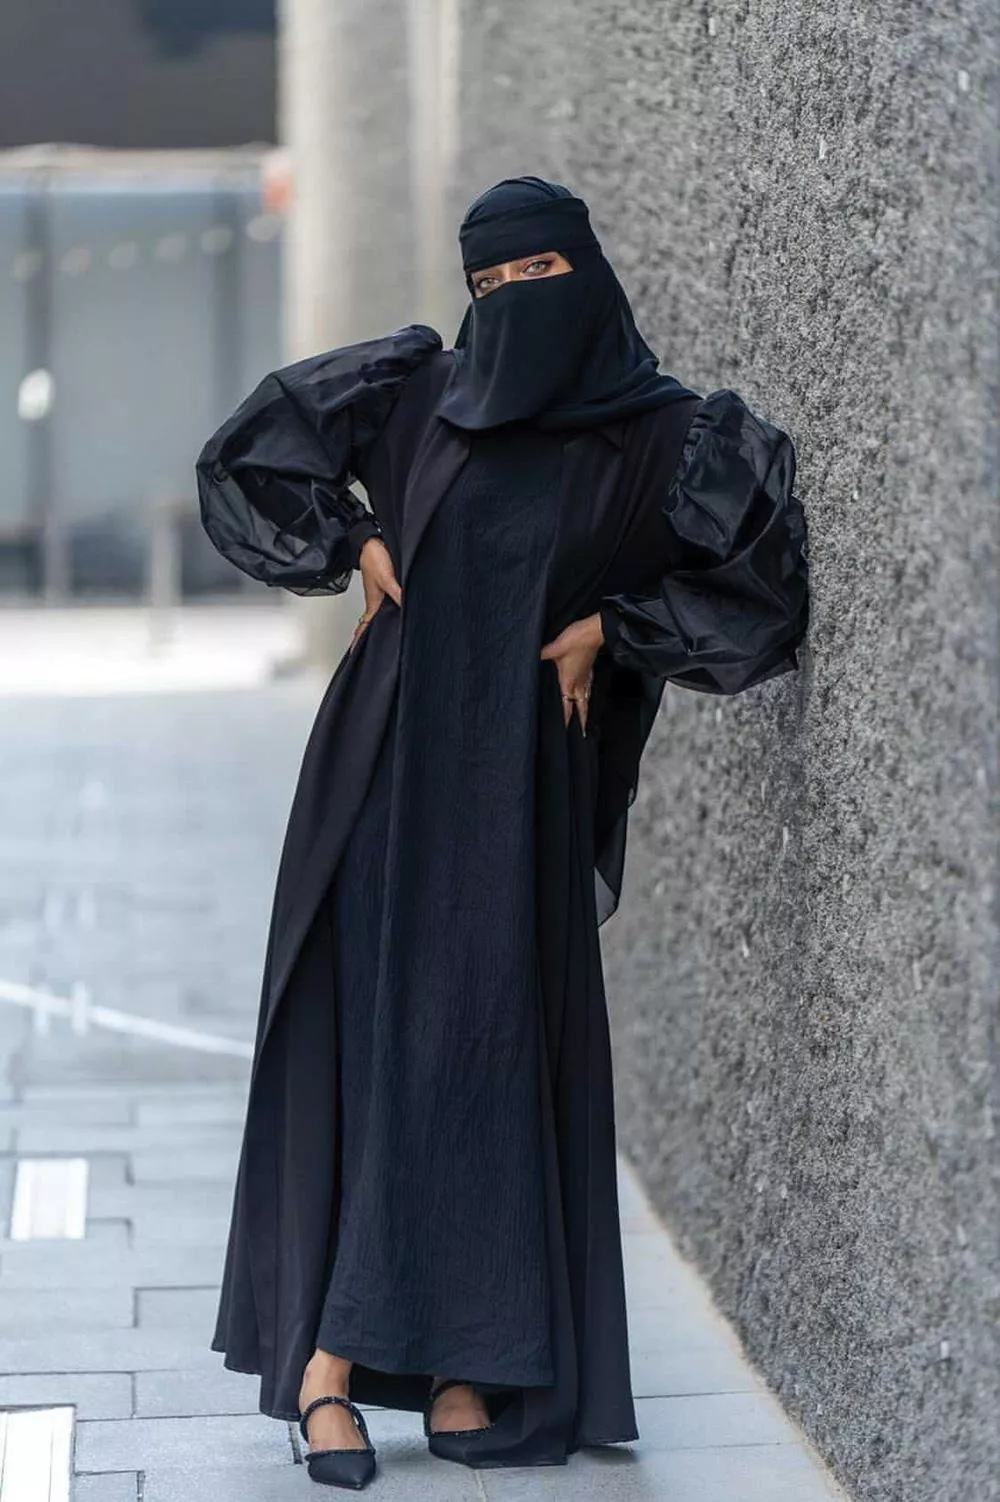 مقابلات خاصة مع 4 نساء عربيات كسرن القيود وحدّدن معايير الجمال الخاصة بهنّ